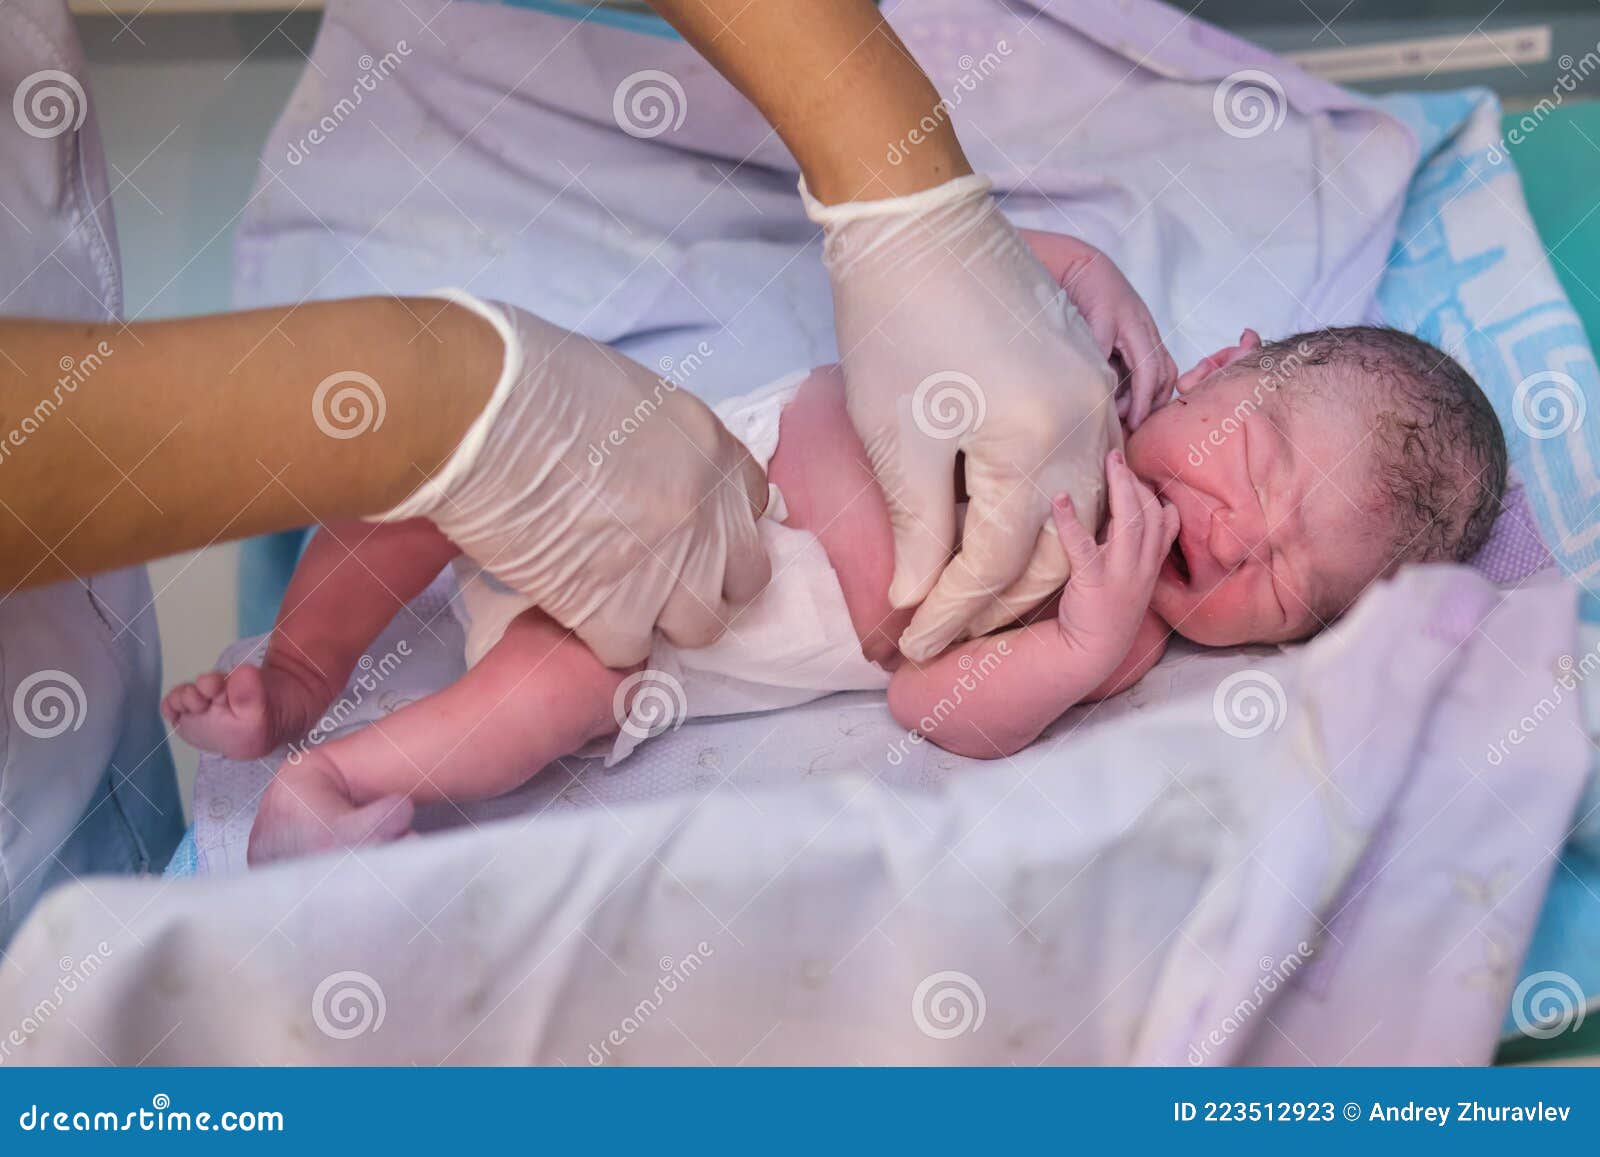 Pañal De Vestir Para Recién Nacidos Por Un Médico Inmediatamente Después  Del Parto Imagen de archivo - Imagen de alineada, madre: 223512923